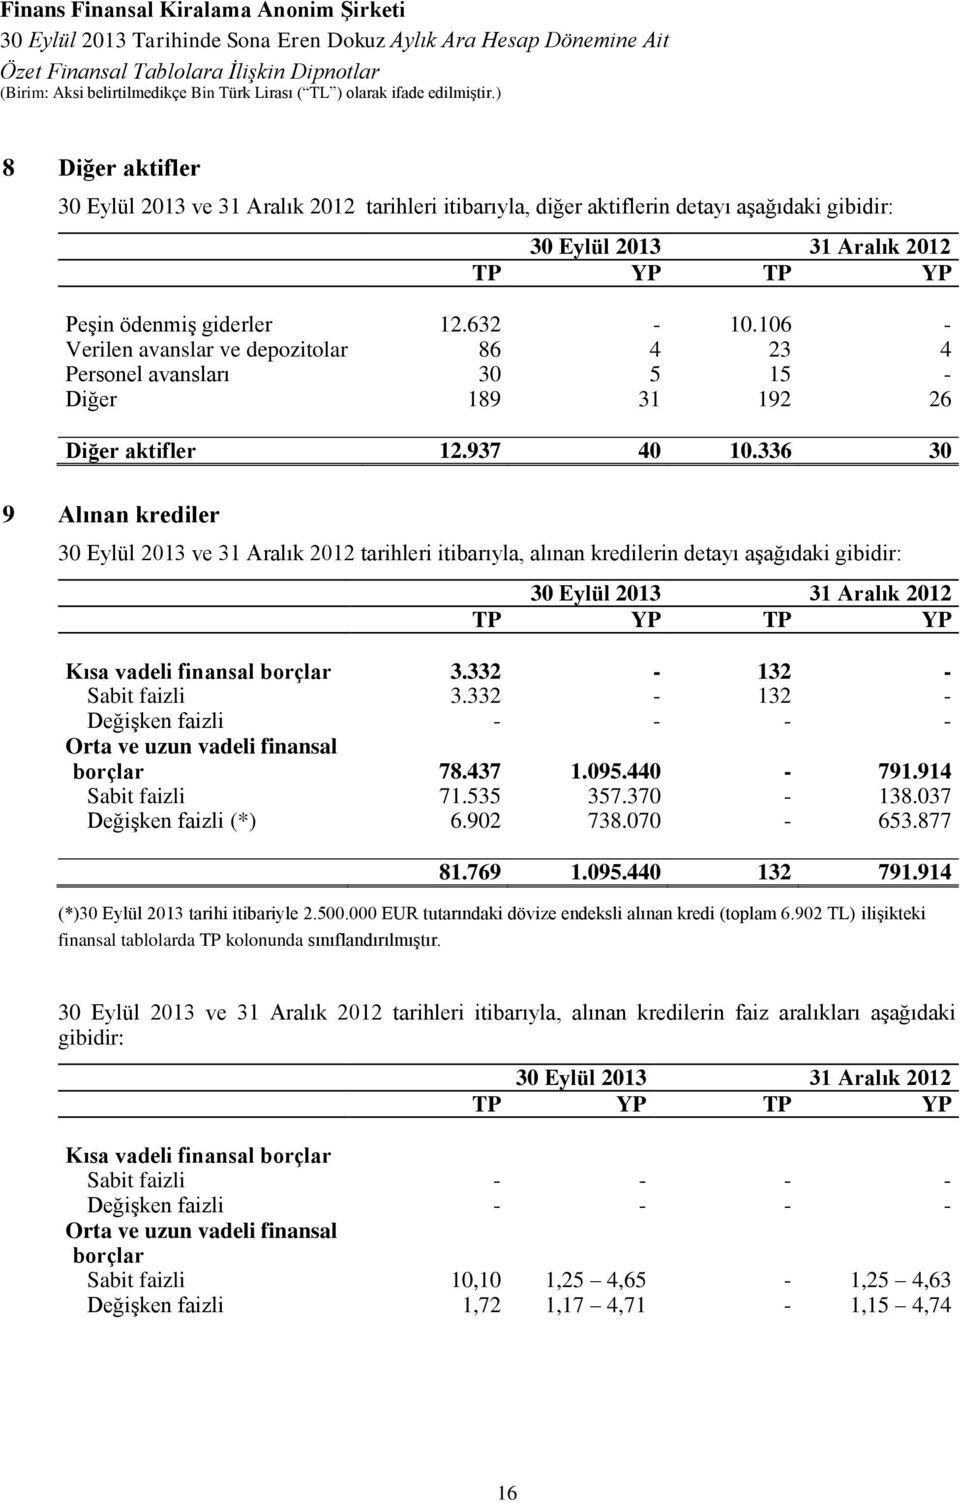 336 30 9 Alınan krediler ve 31 Aralık 2012 tarihleri itibarıyla, alınan kredilerin detayı aşağıdaki gibidir: TP YP TP YP Kısa vadeli finansal borçlar 3.332-132 - Sabit faizli 3.